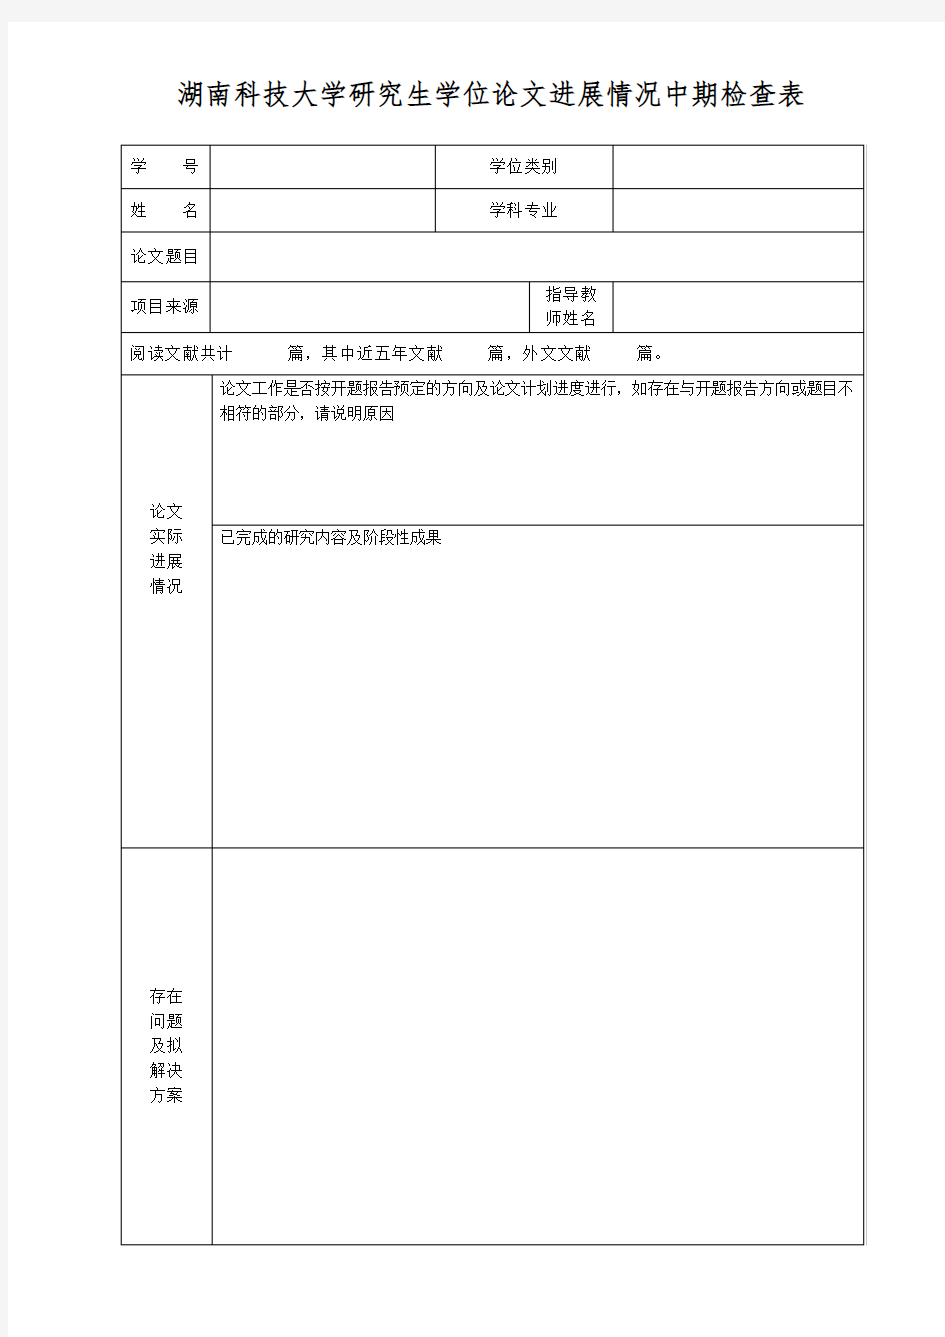 湖南科技大学研究生学位论文进展情况中期检查表